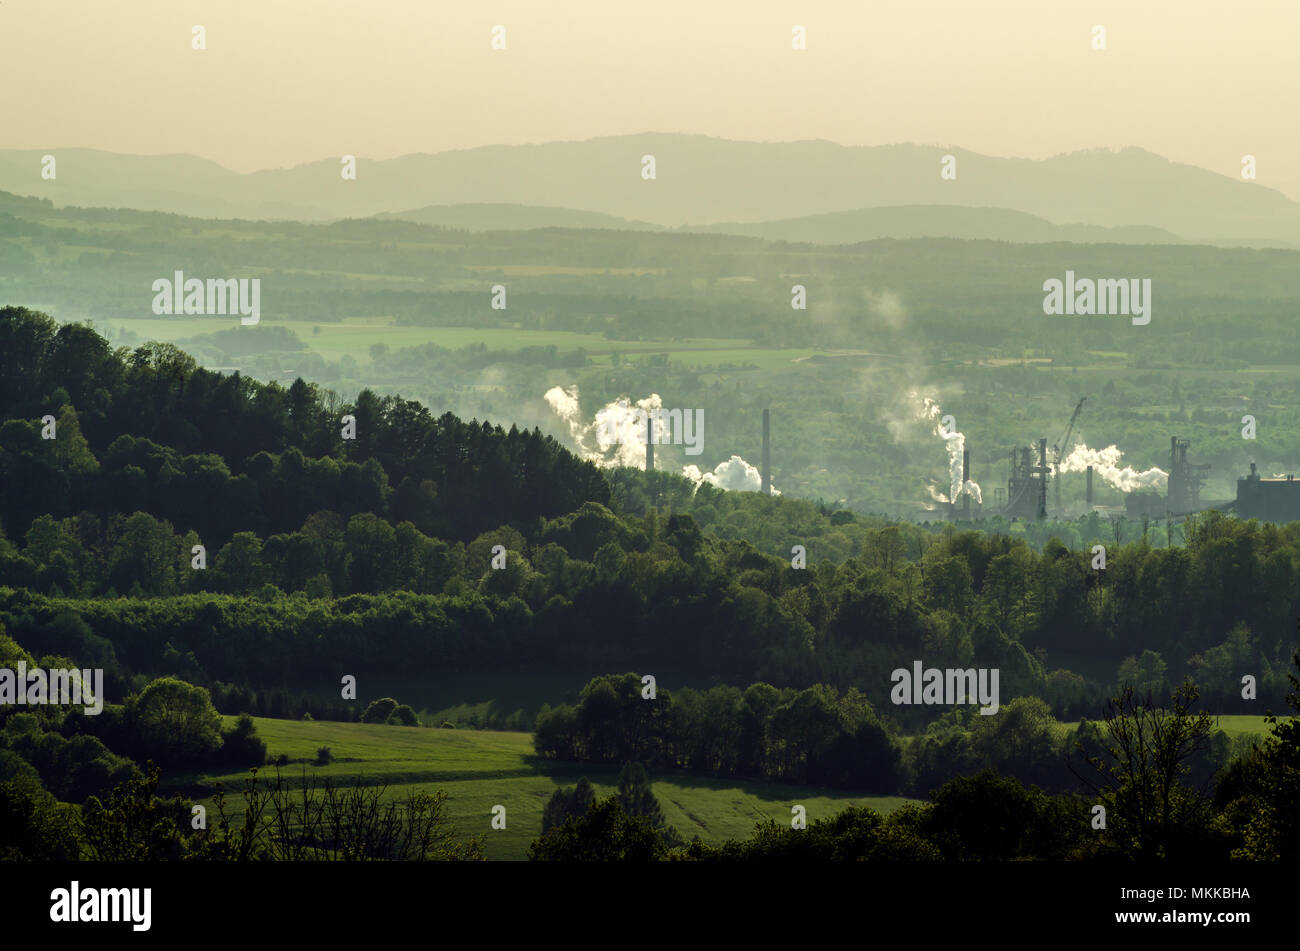 Forges de fumeurs dans la vallée entre les collines boisées vert à Trinec, Ostravsko-karvinska uhelna panev, République tchèque (Cesko). Banque D'Images